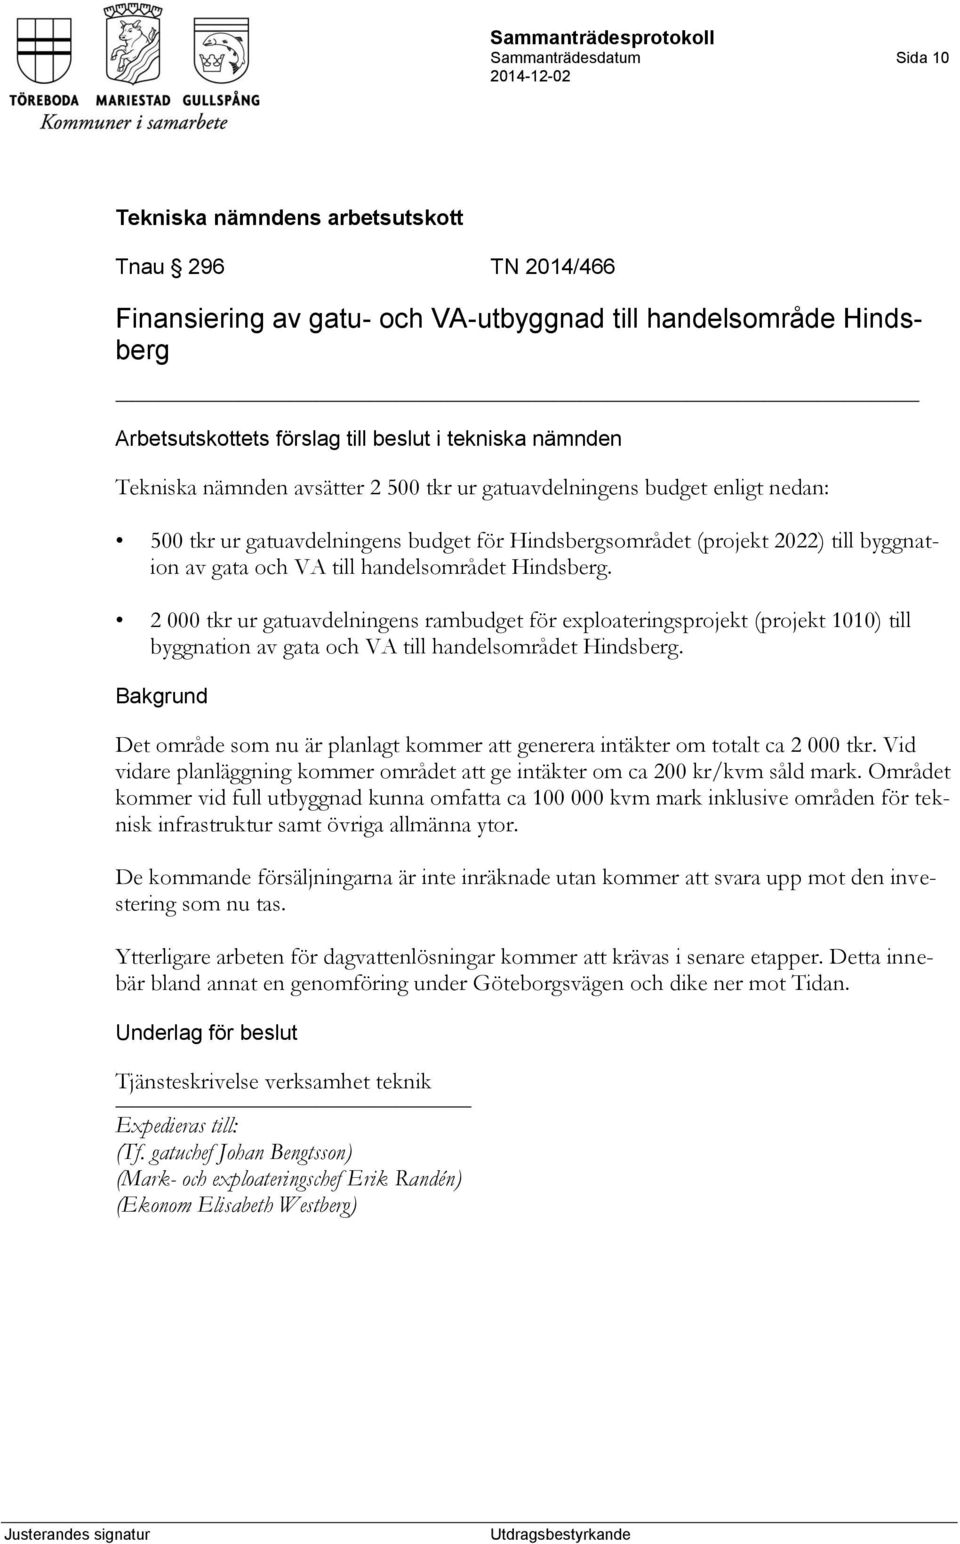 2 000 tkr ur gatuavdelningens rambudget för exploateringsprojekt (projekt 1010) till byggnation av gata och VA till handelsområdet Hindsberg.